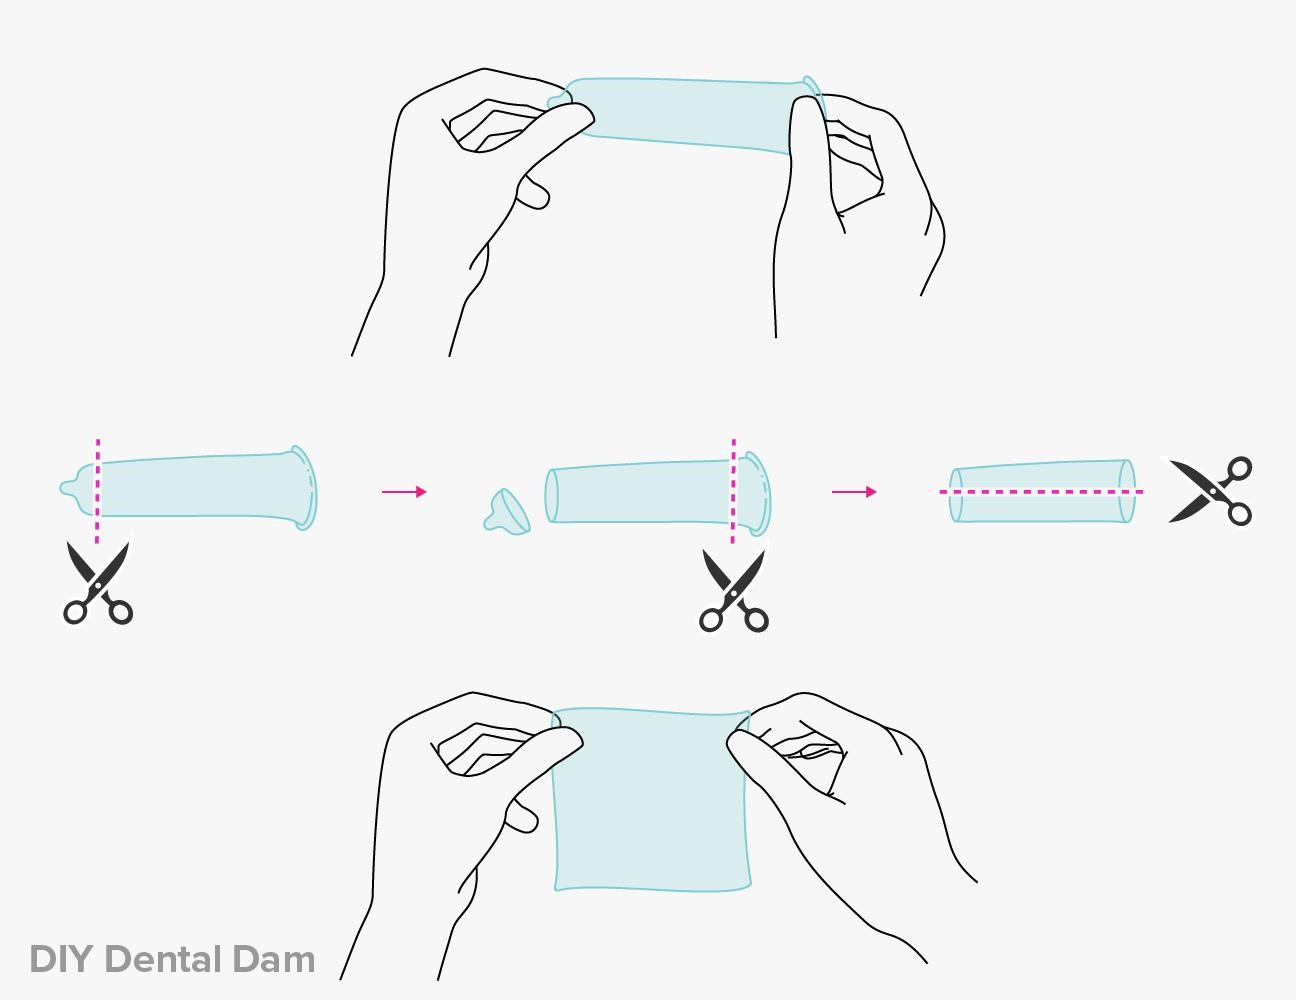 DIY dental dam from condom